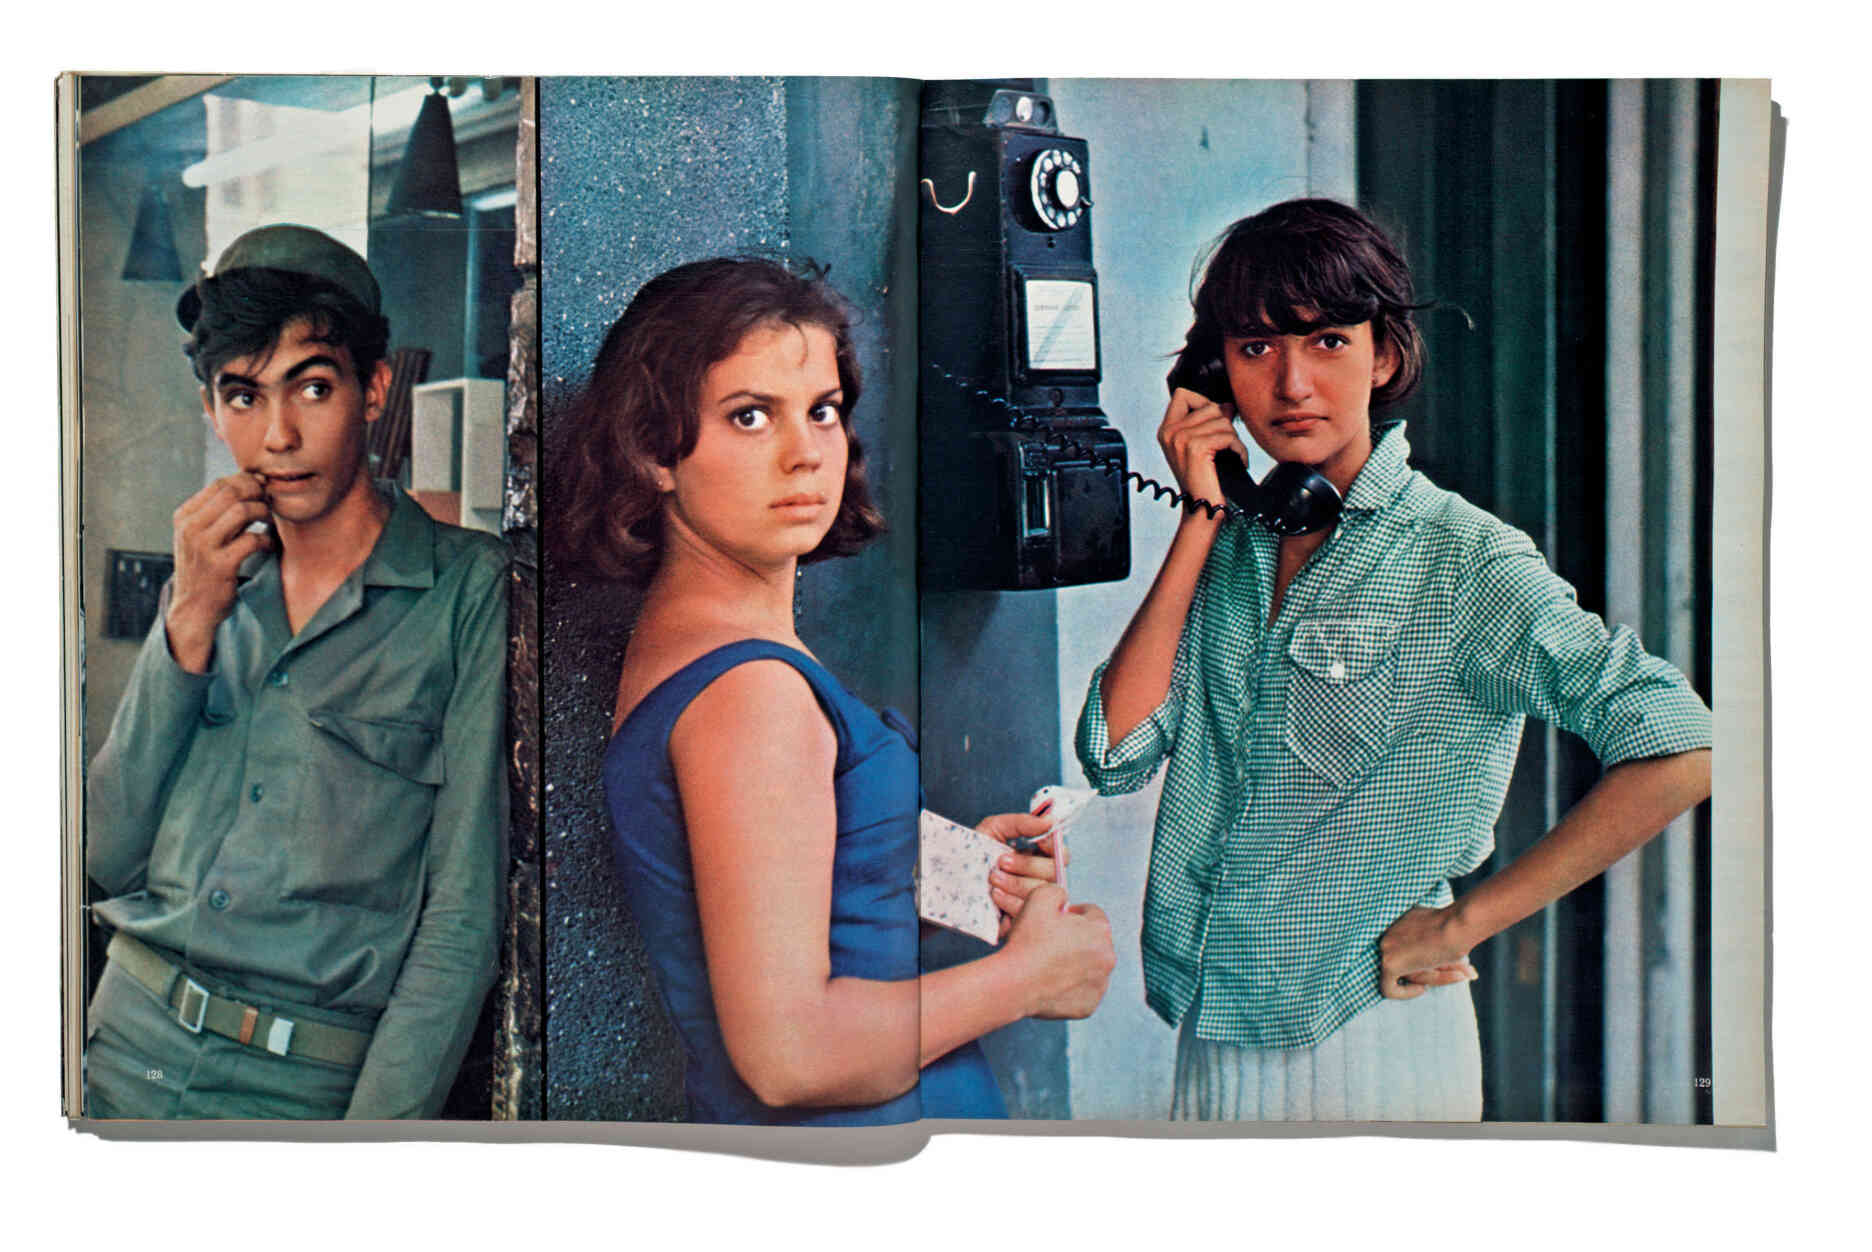 Cuba by Ed van der Elsken, 1967